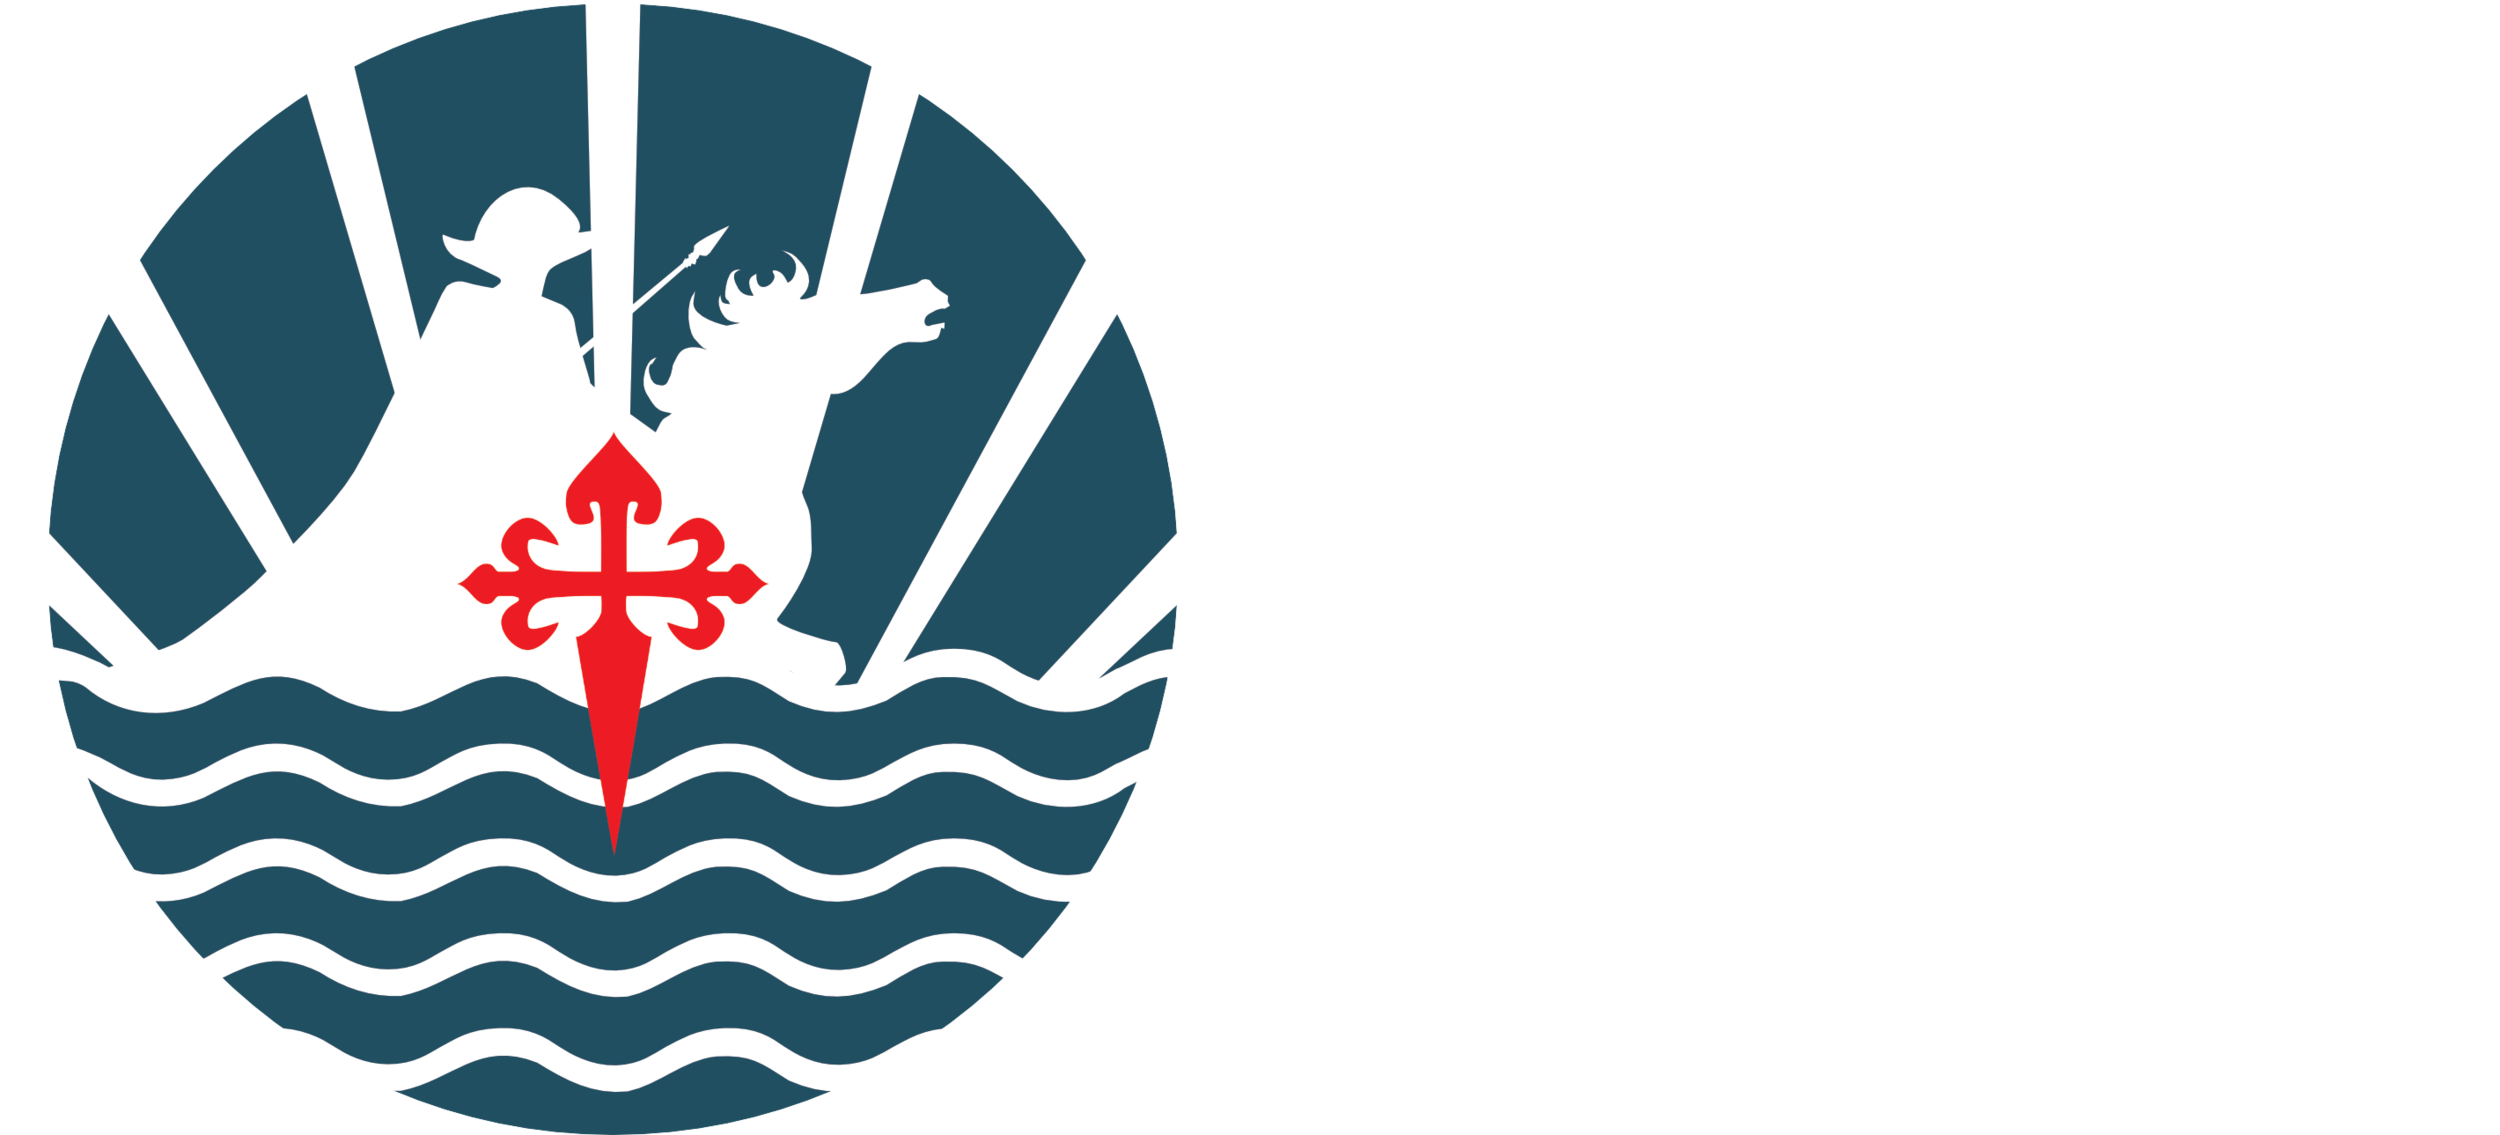 Fundación Traslatio